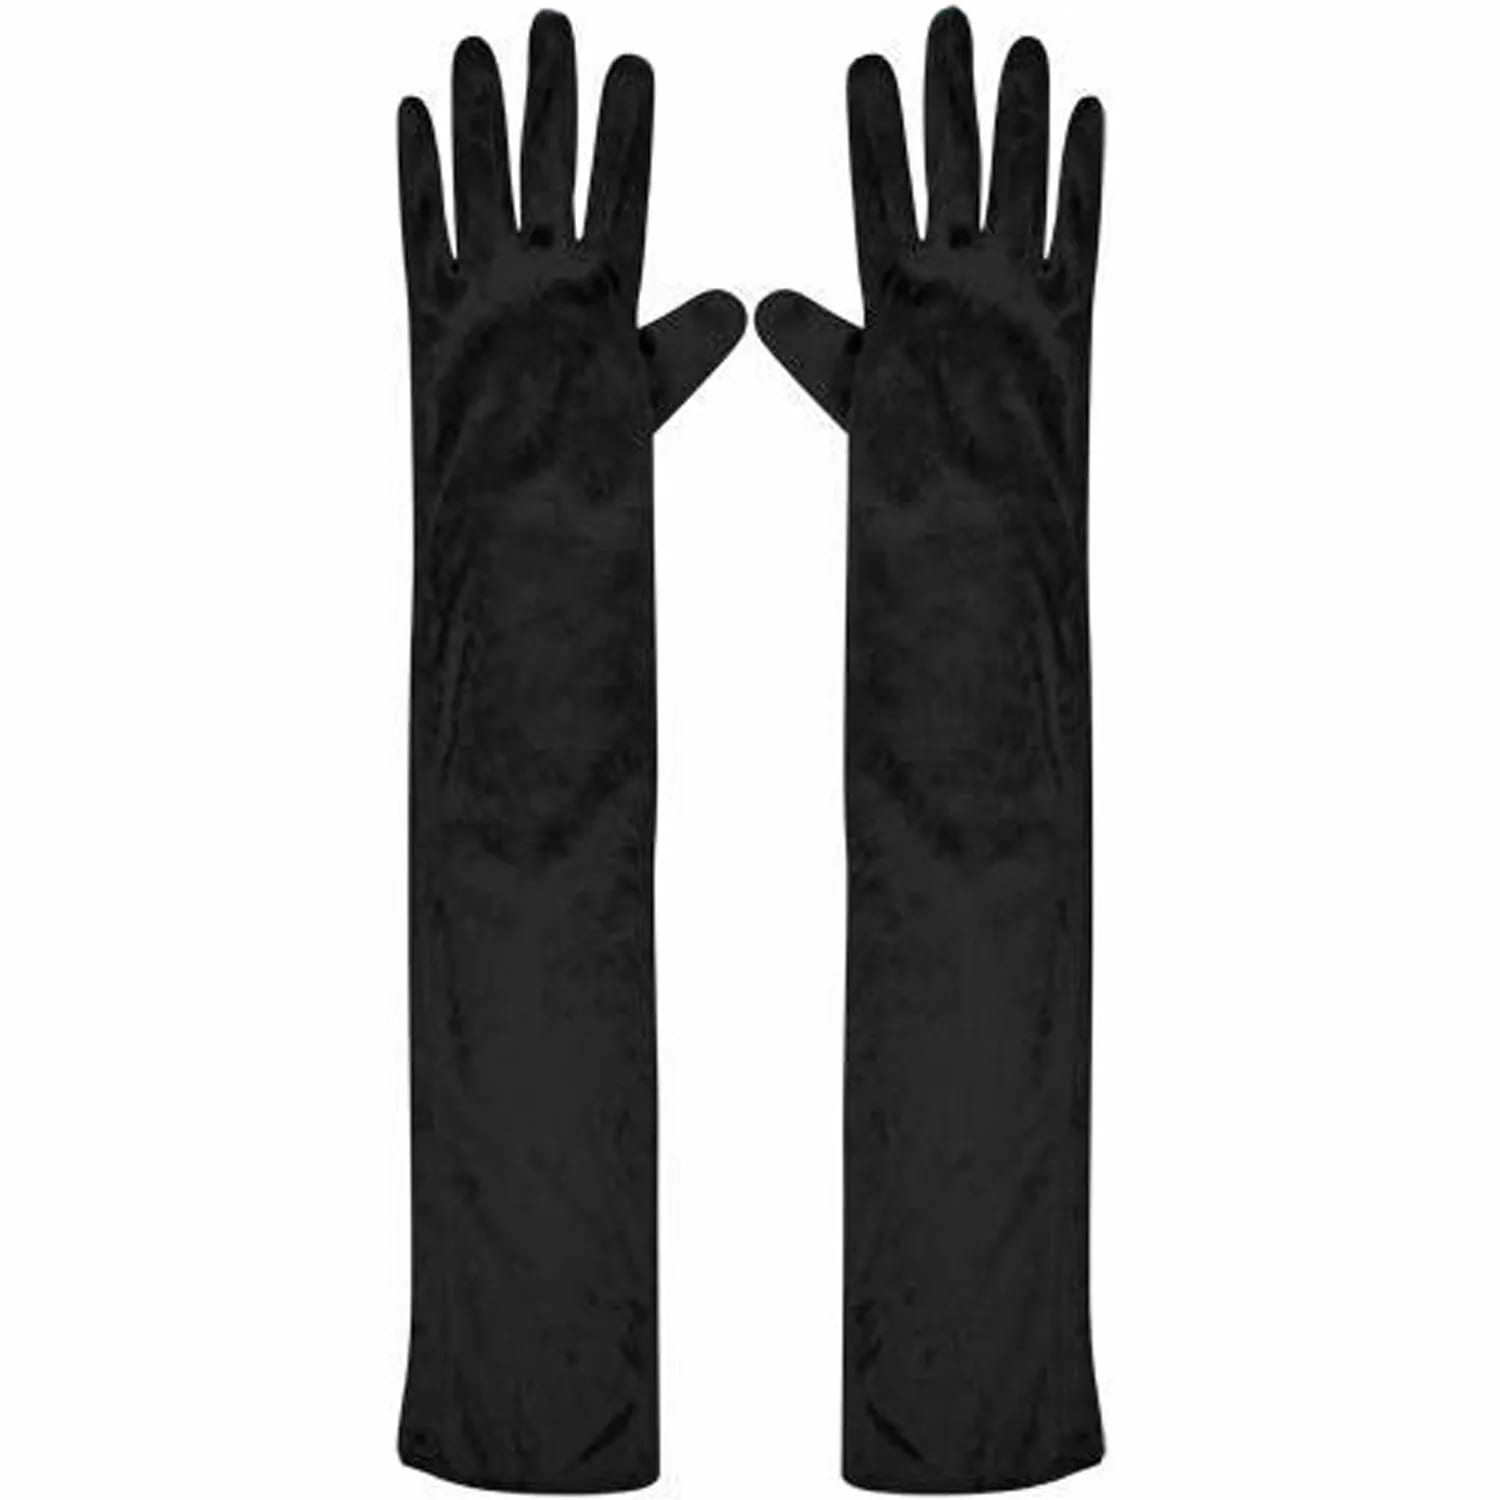 Set of Five Long Black Gloves